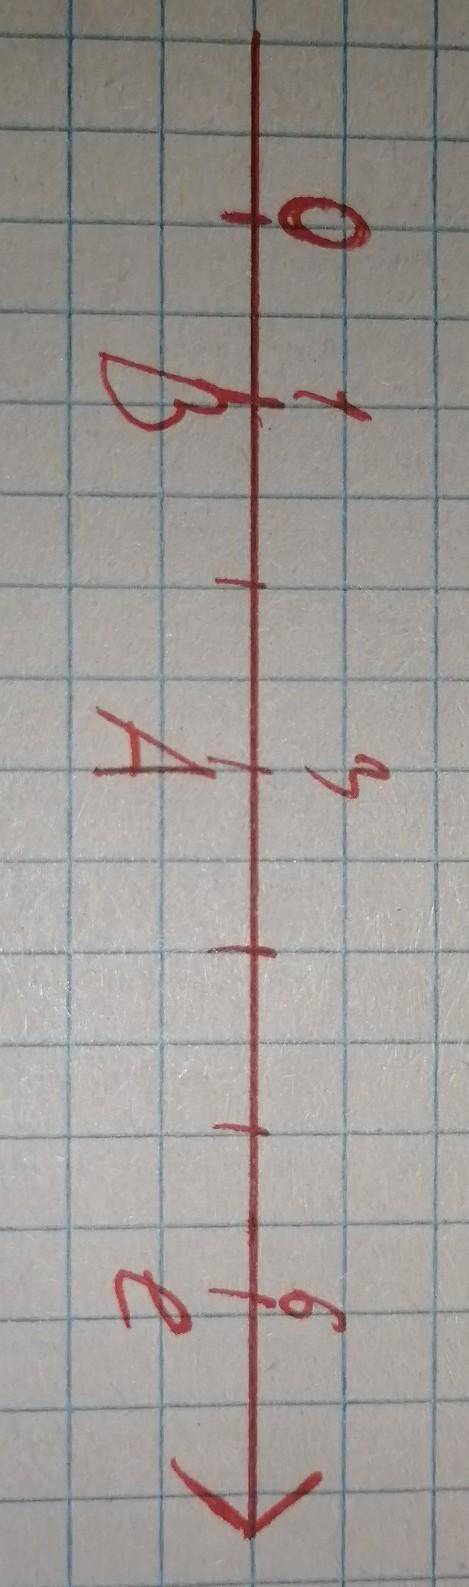 начертите координатный луч за единичный отрезок длиной 1 см отметьте на координатном луче точки A(3)